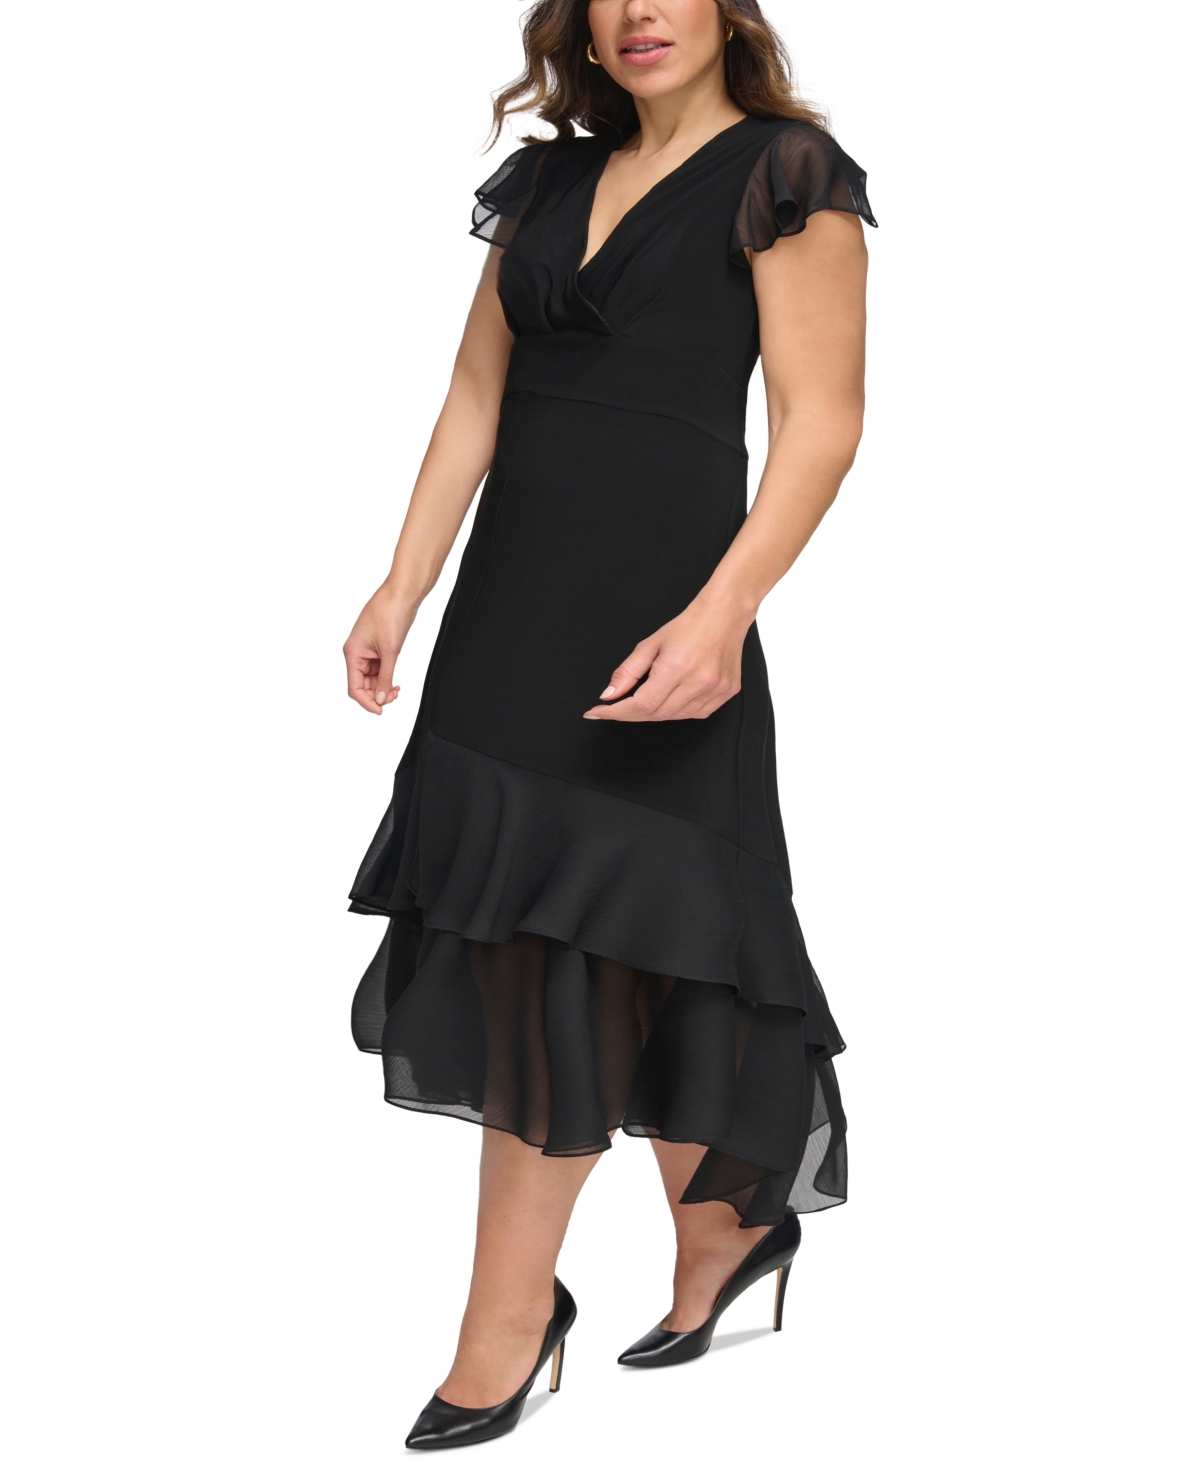 1930s Plus Size Dresses | Art Deco Plus Size Dresses Tommy Hilfiger Plus Size Flutter-Sleeve A-Line Dress - Black $129.00 AT vintagedancer.com